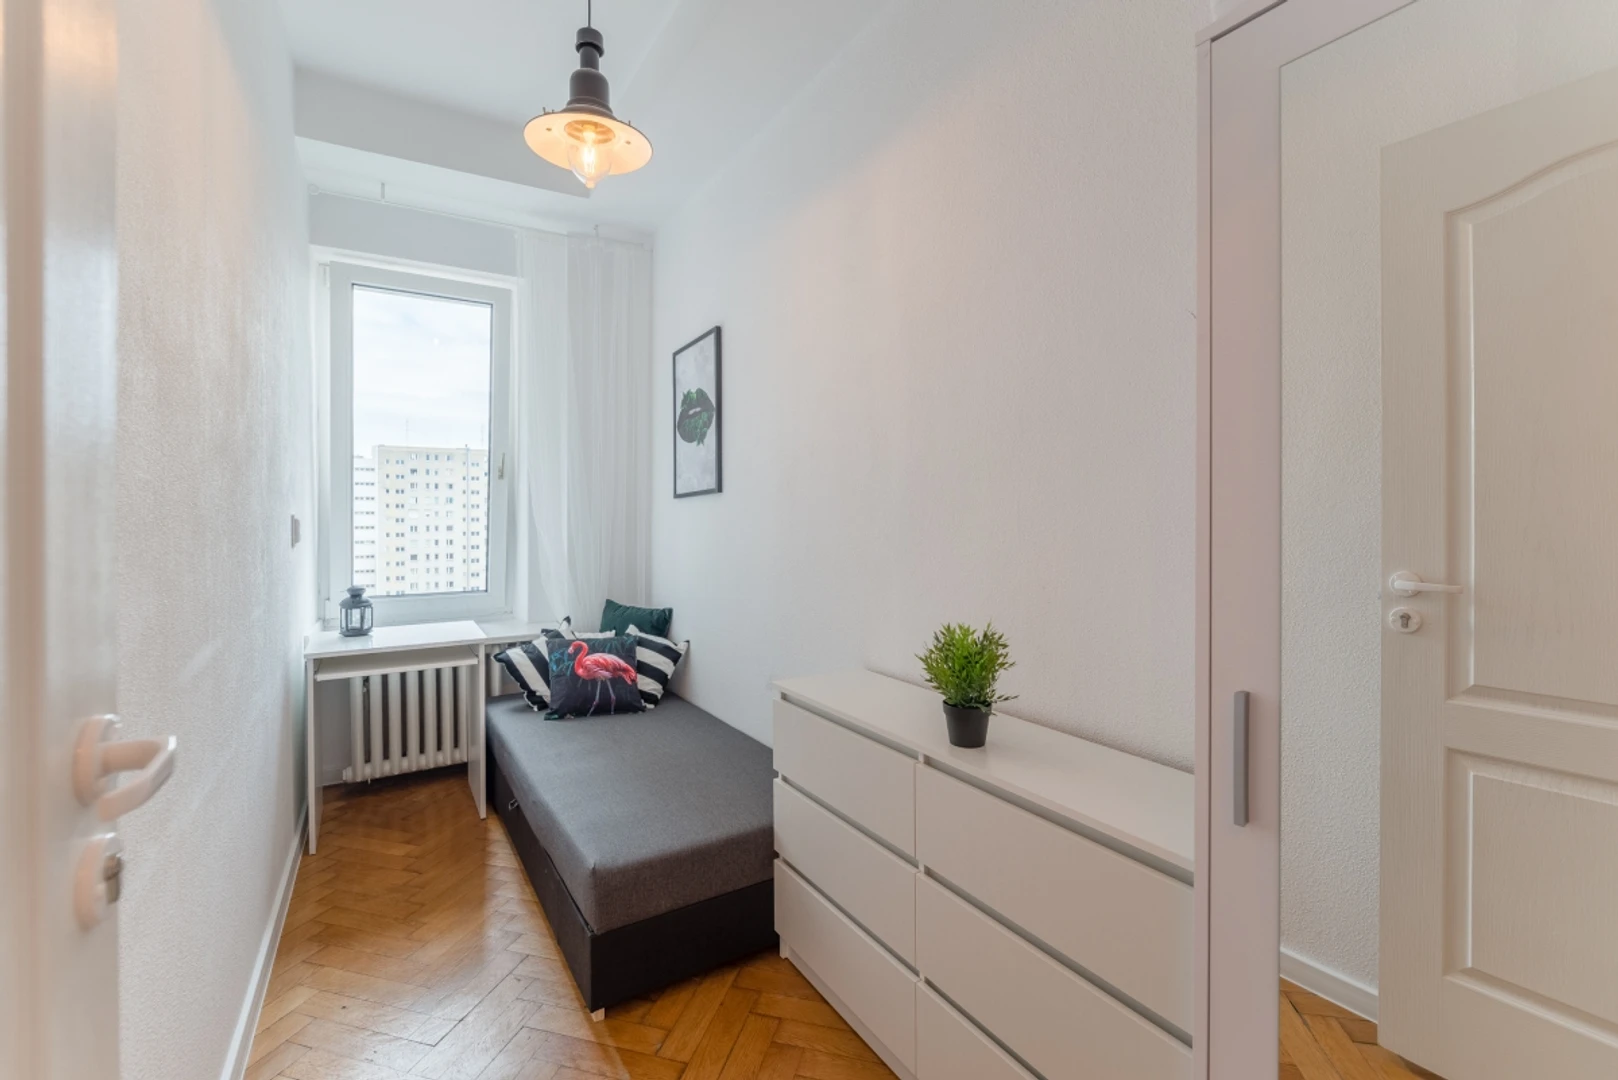 Alquiler de habitación en piso compartido en Gdynia